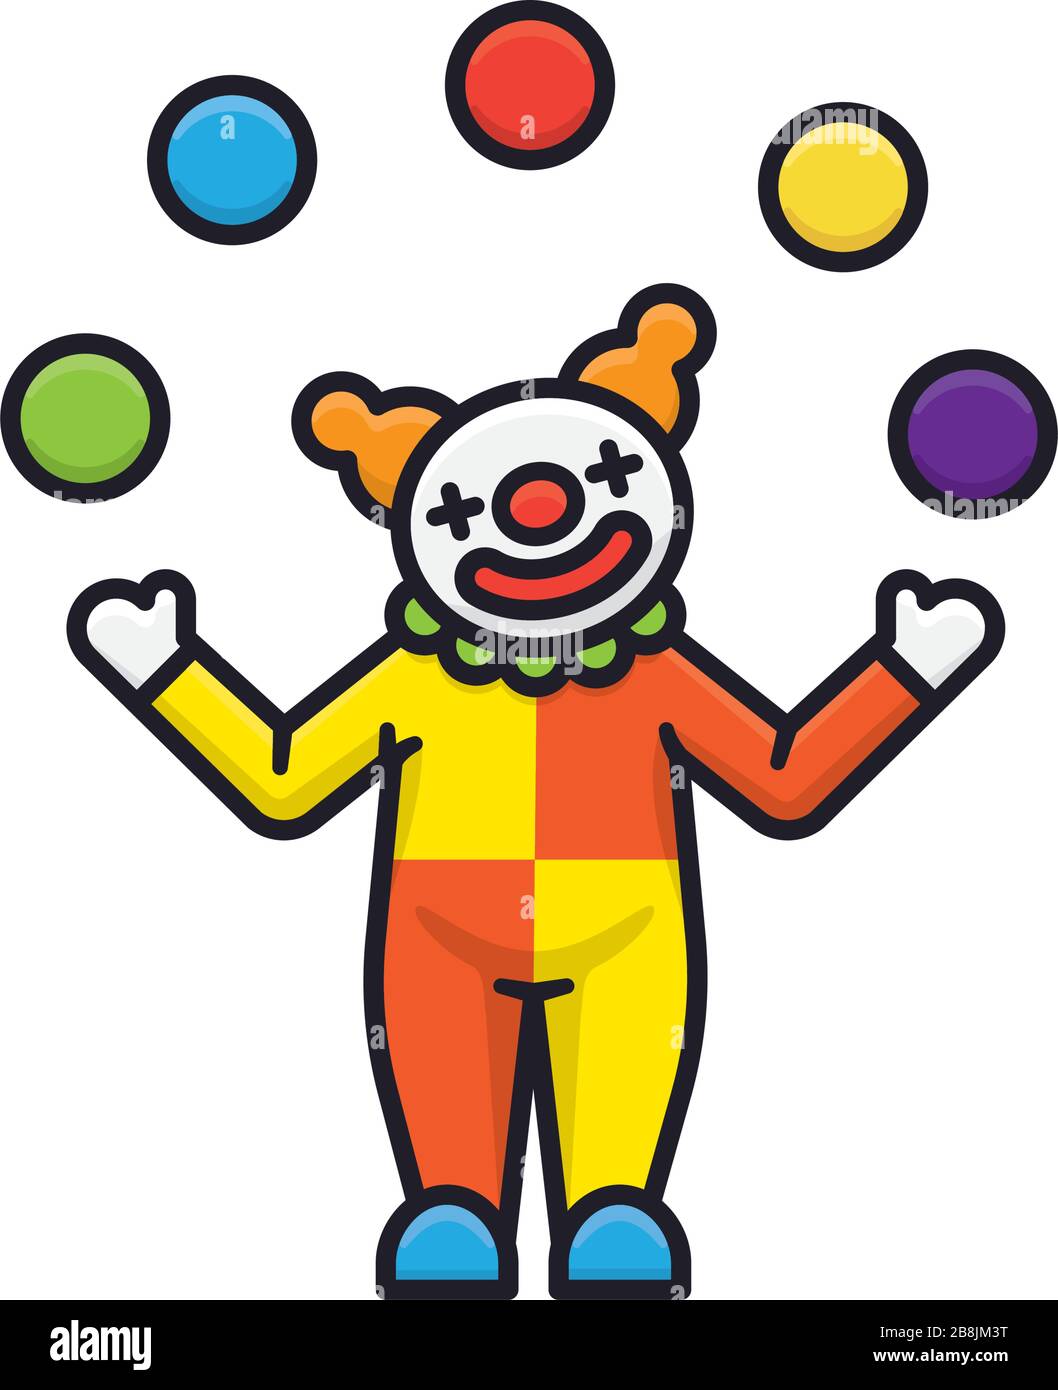 Jonglage Clown isolierte Vektorgrafiken für einen unterhaltsamen Tag am 1. April. Circus, Fun und April Fools Day Symbol. Stock Vektor